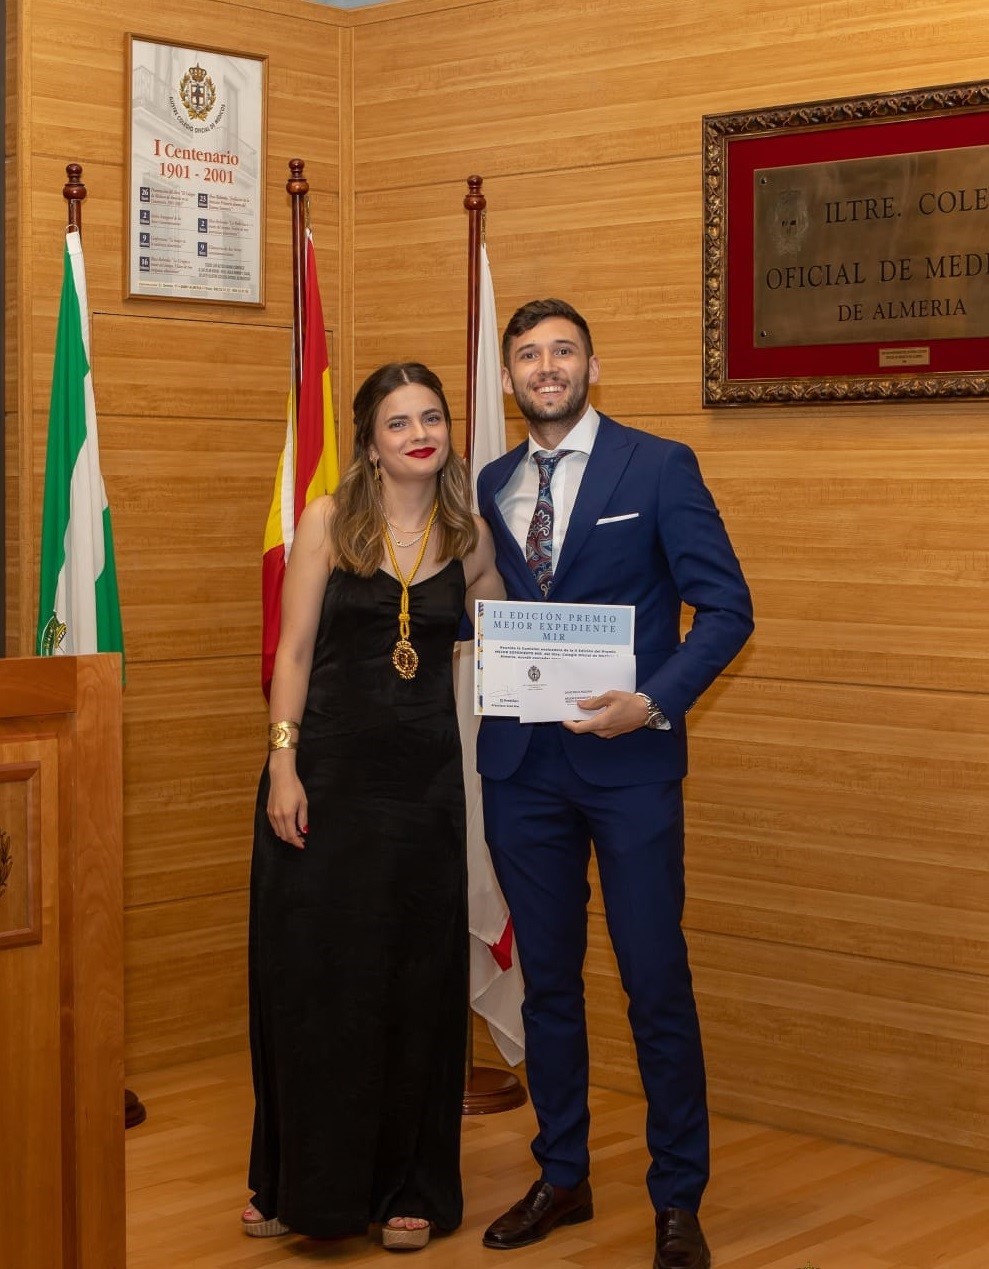 El traumatólogo del Hospital Universitario Poniente David Raya, premio al mejor expediente MIR del Colegio de Médicos de Almería